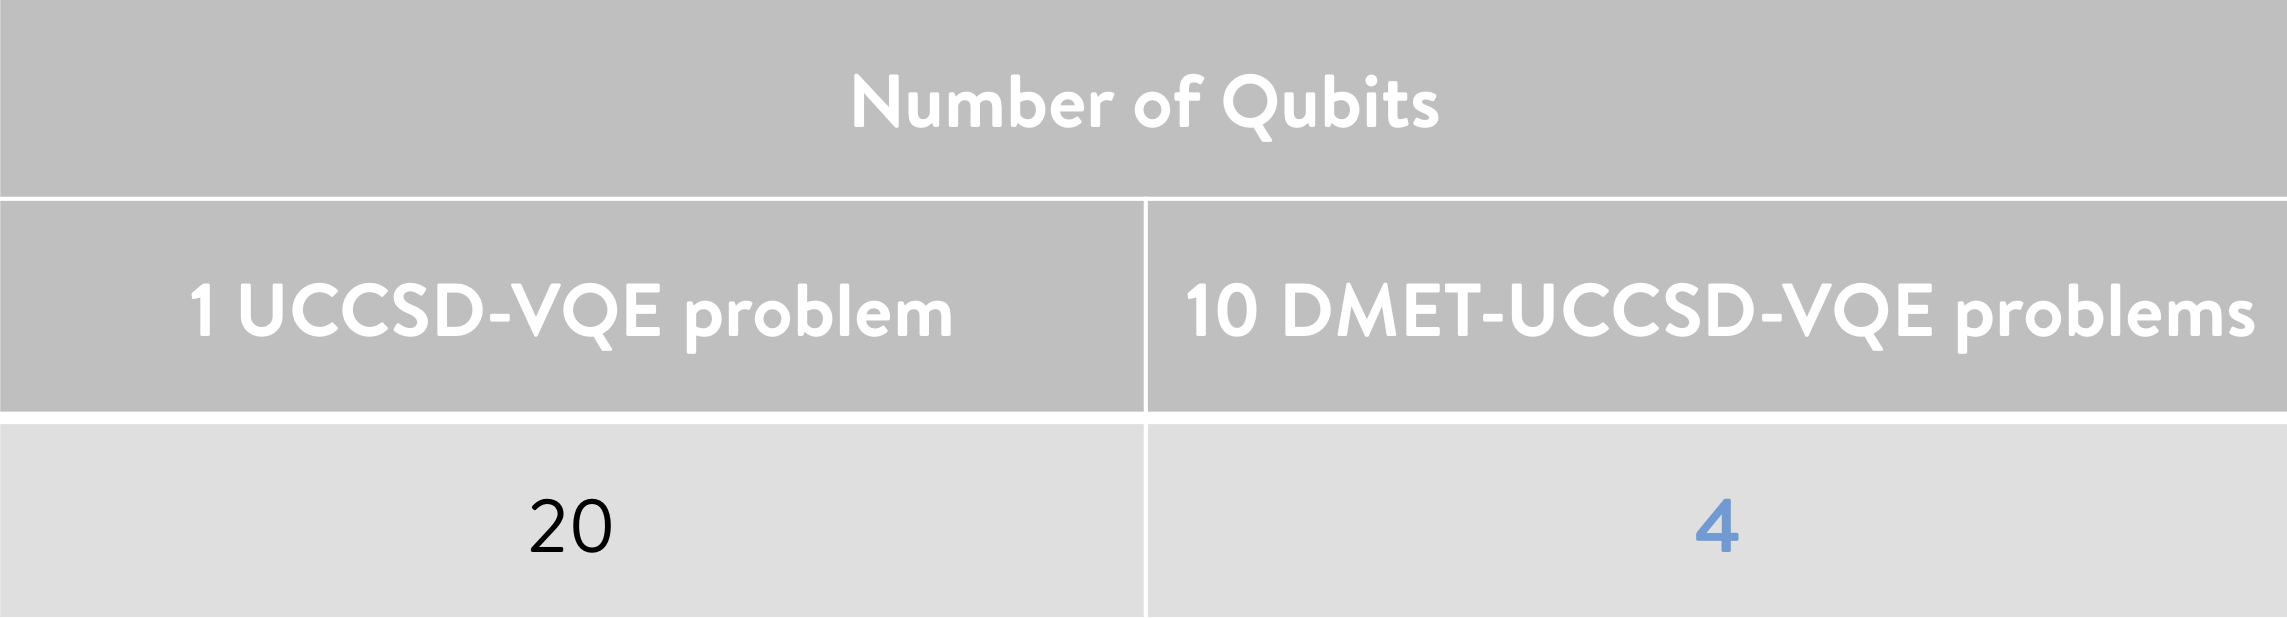 _images/Table_DMET_qubits_H10.png